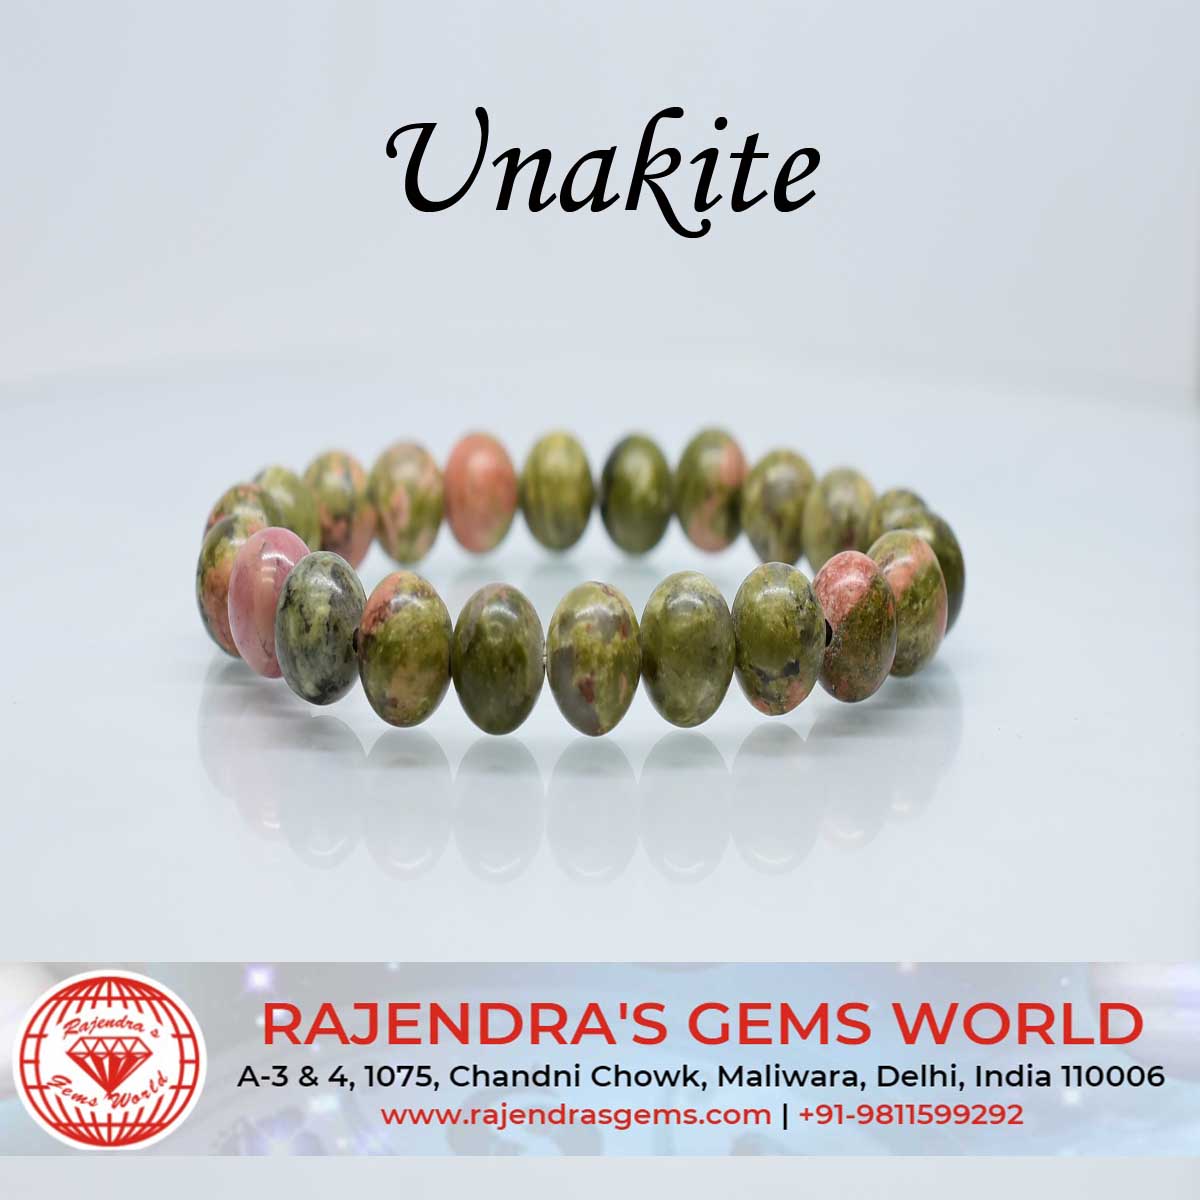 Elastic bracelet with Unakite gemstones - My Bendel